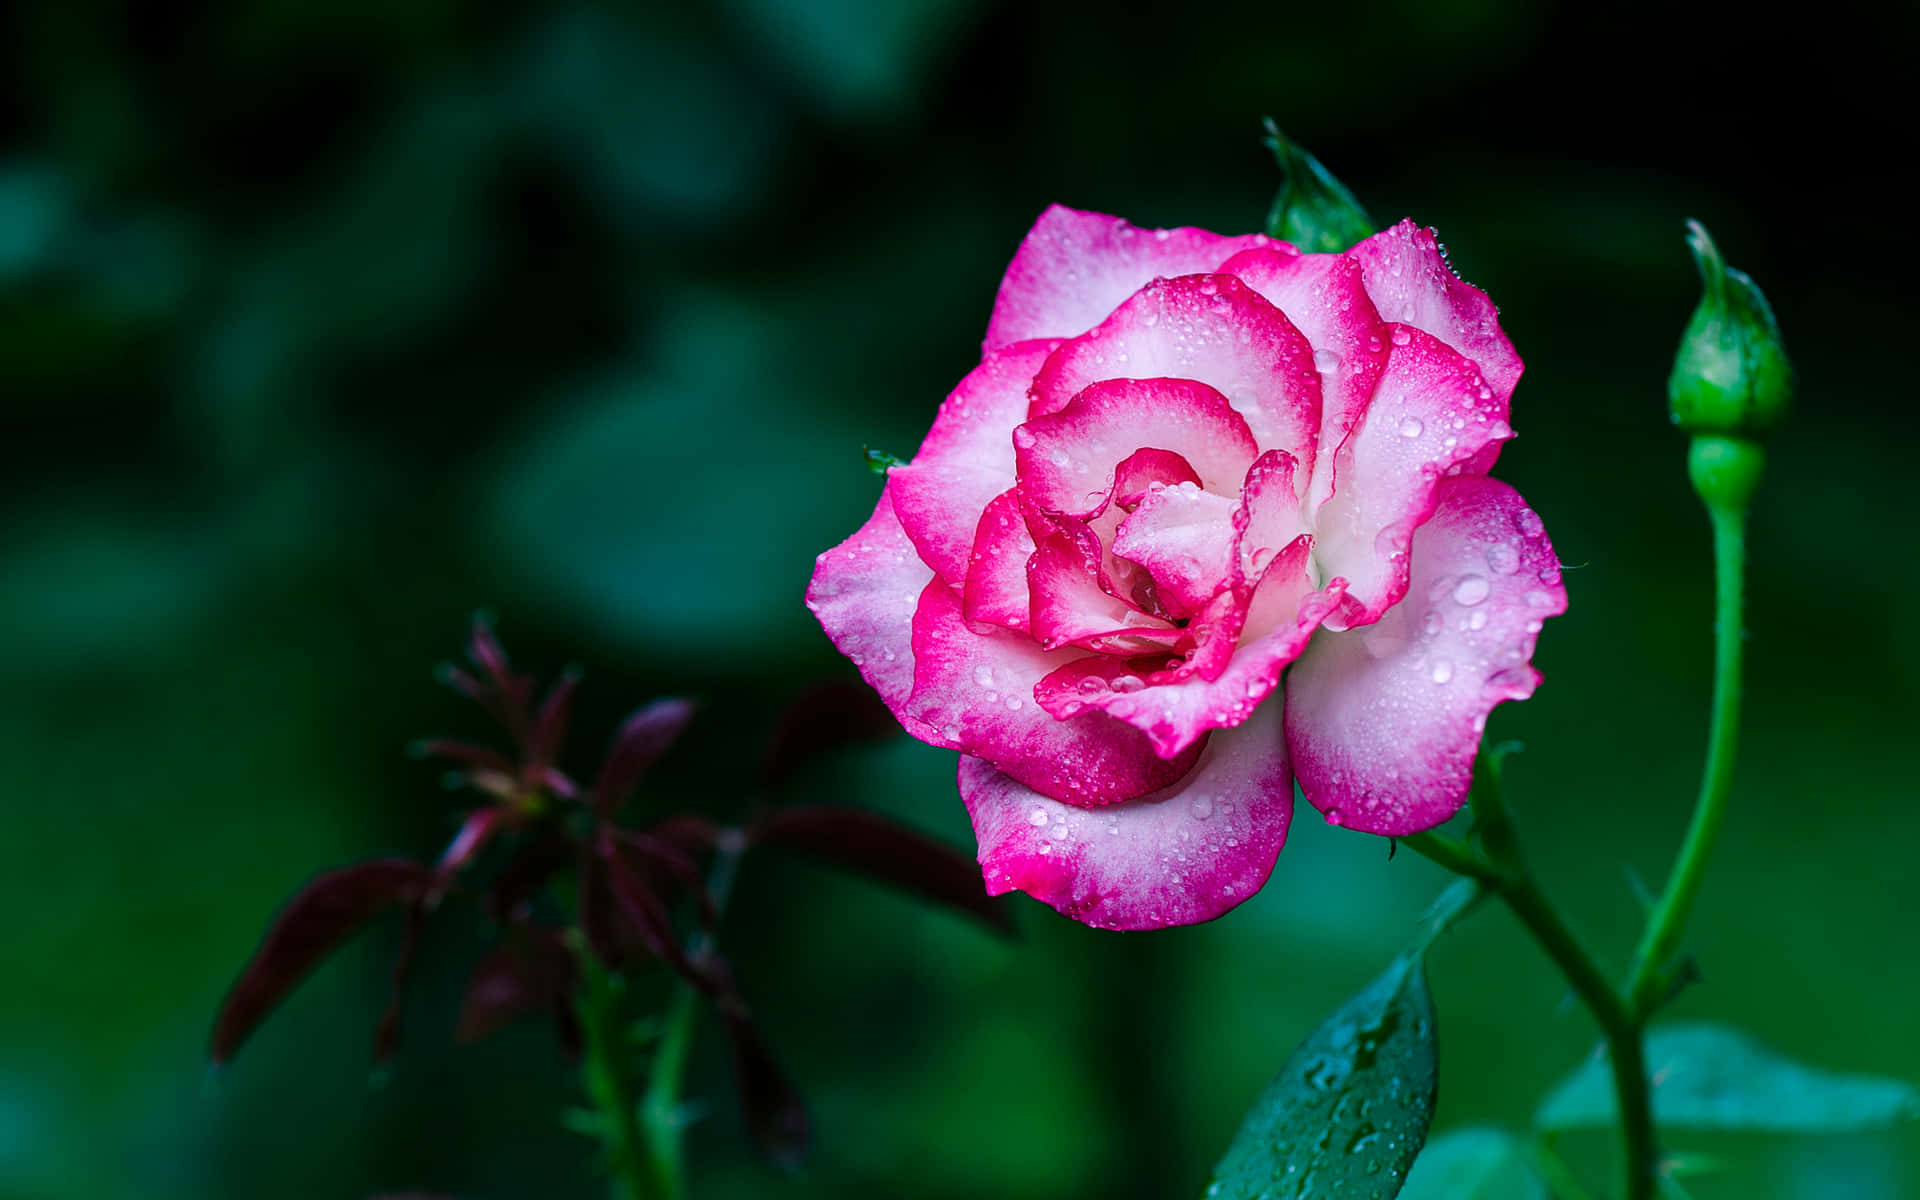 Awe-inspiring Display of Blooming Roses